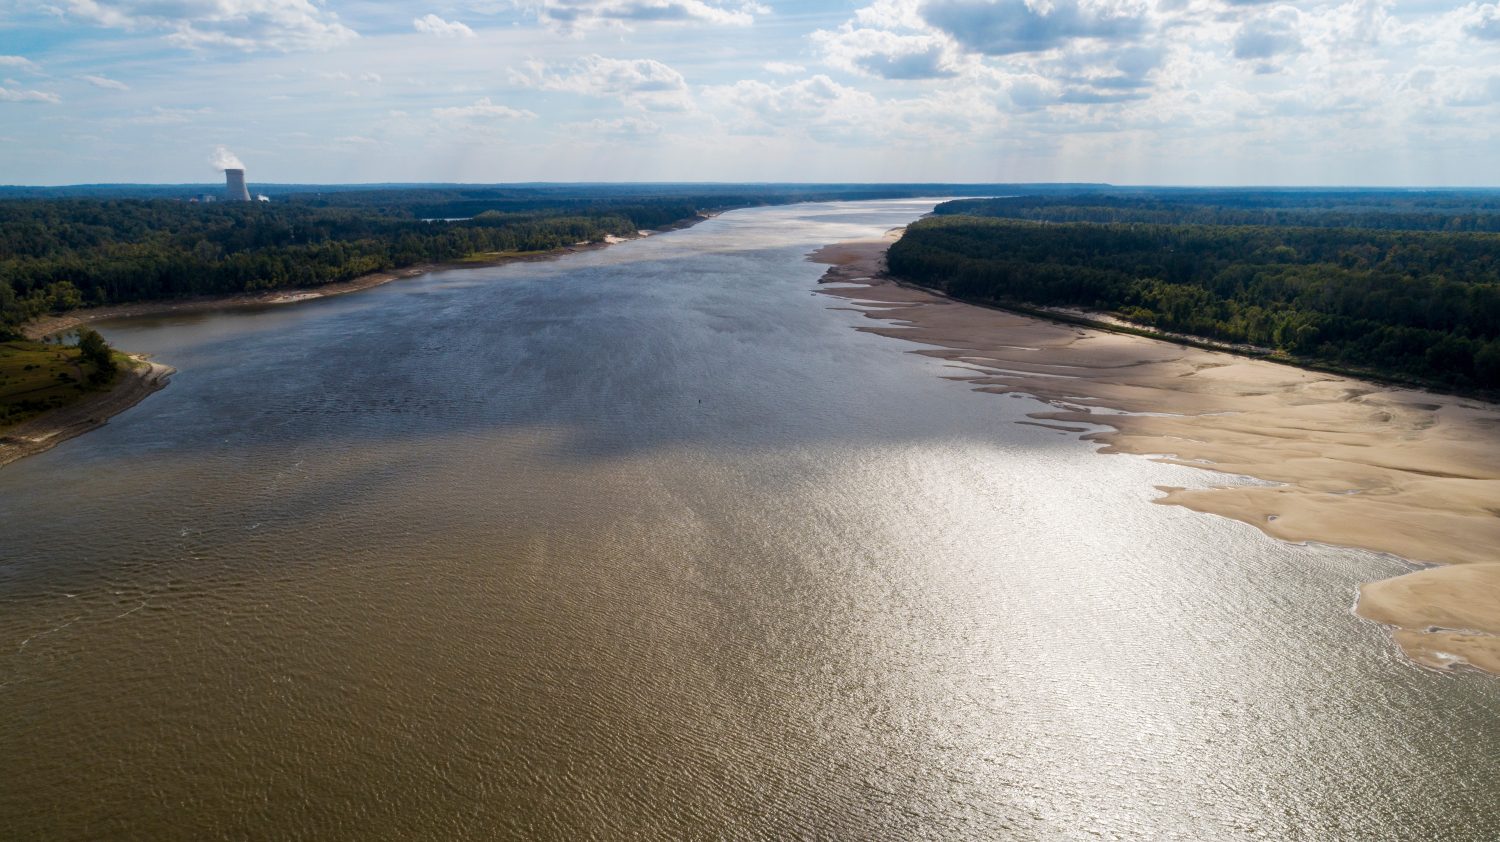 Vista dal drone guardando a valle sul fiume Mississippi vicino al Grand Gulf, Mississippi.  L'acqua bassa sul fiume ha esposto un banco di sabbia sulla sponda destra discendente.  Il livello dell'acqua più basso degli ultimi 30 anni.